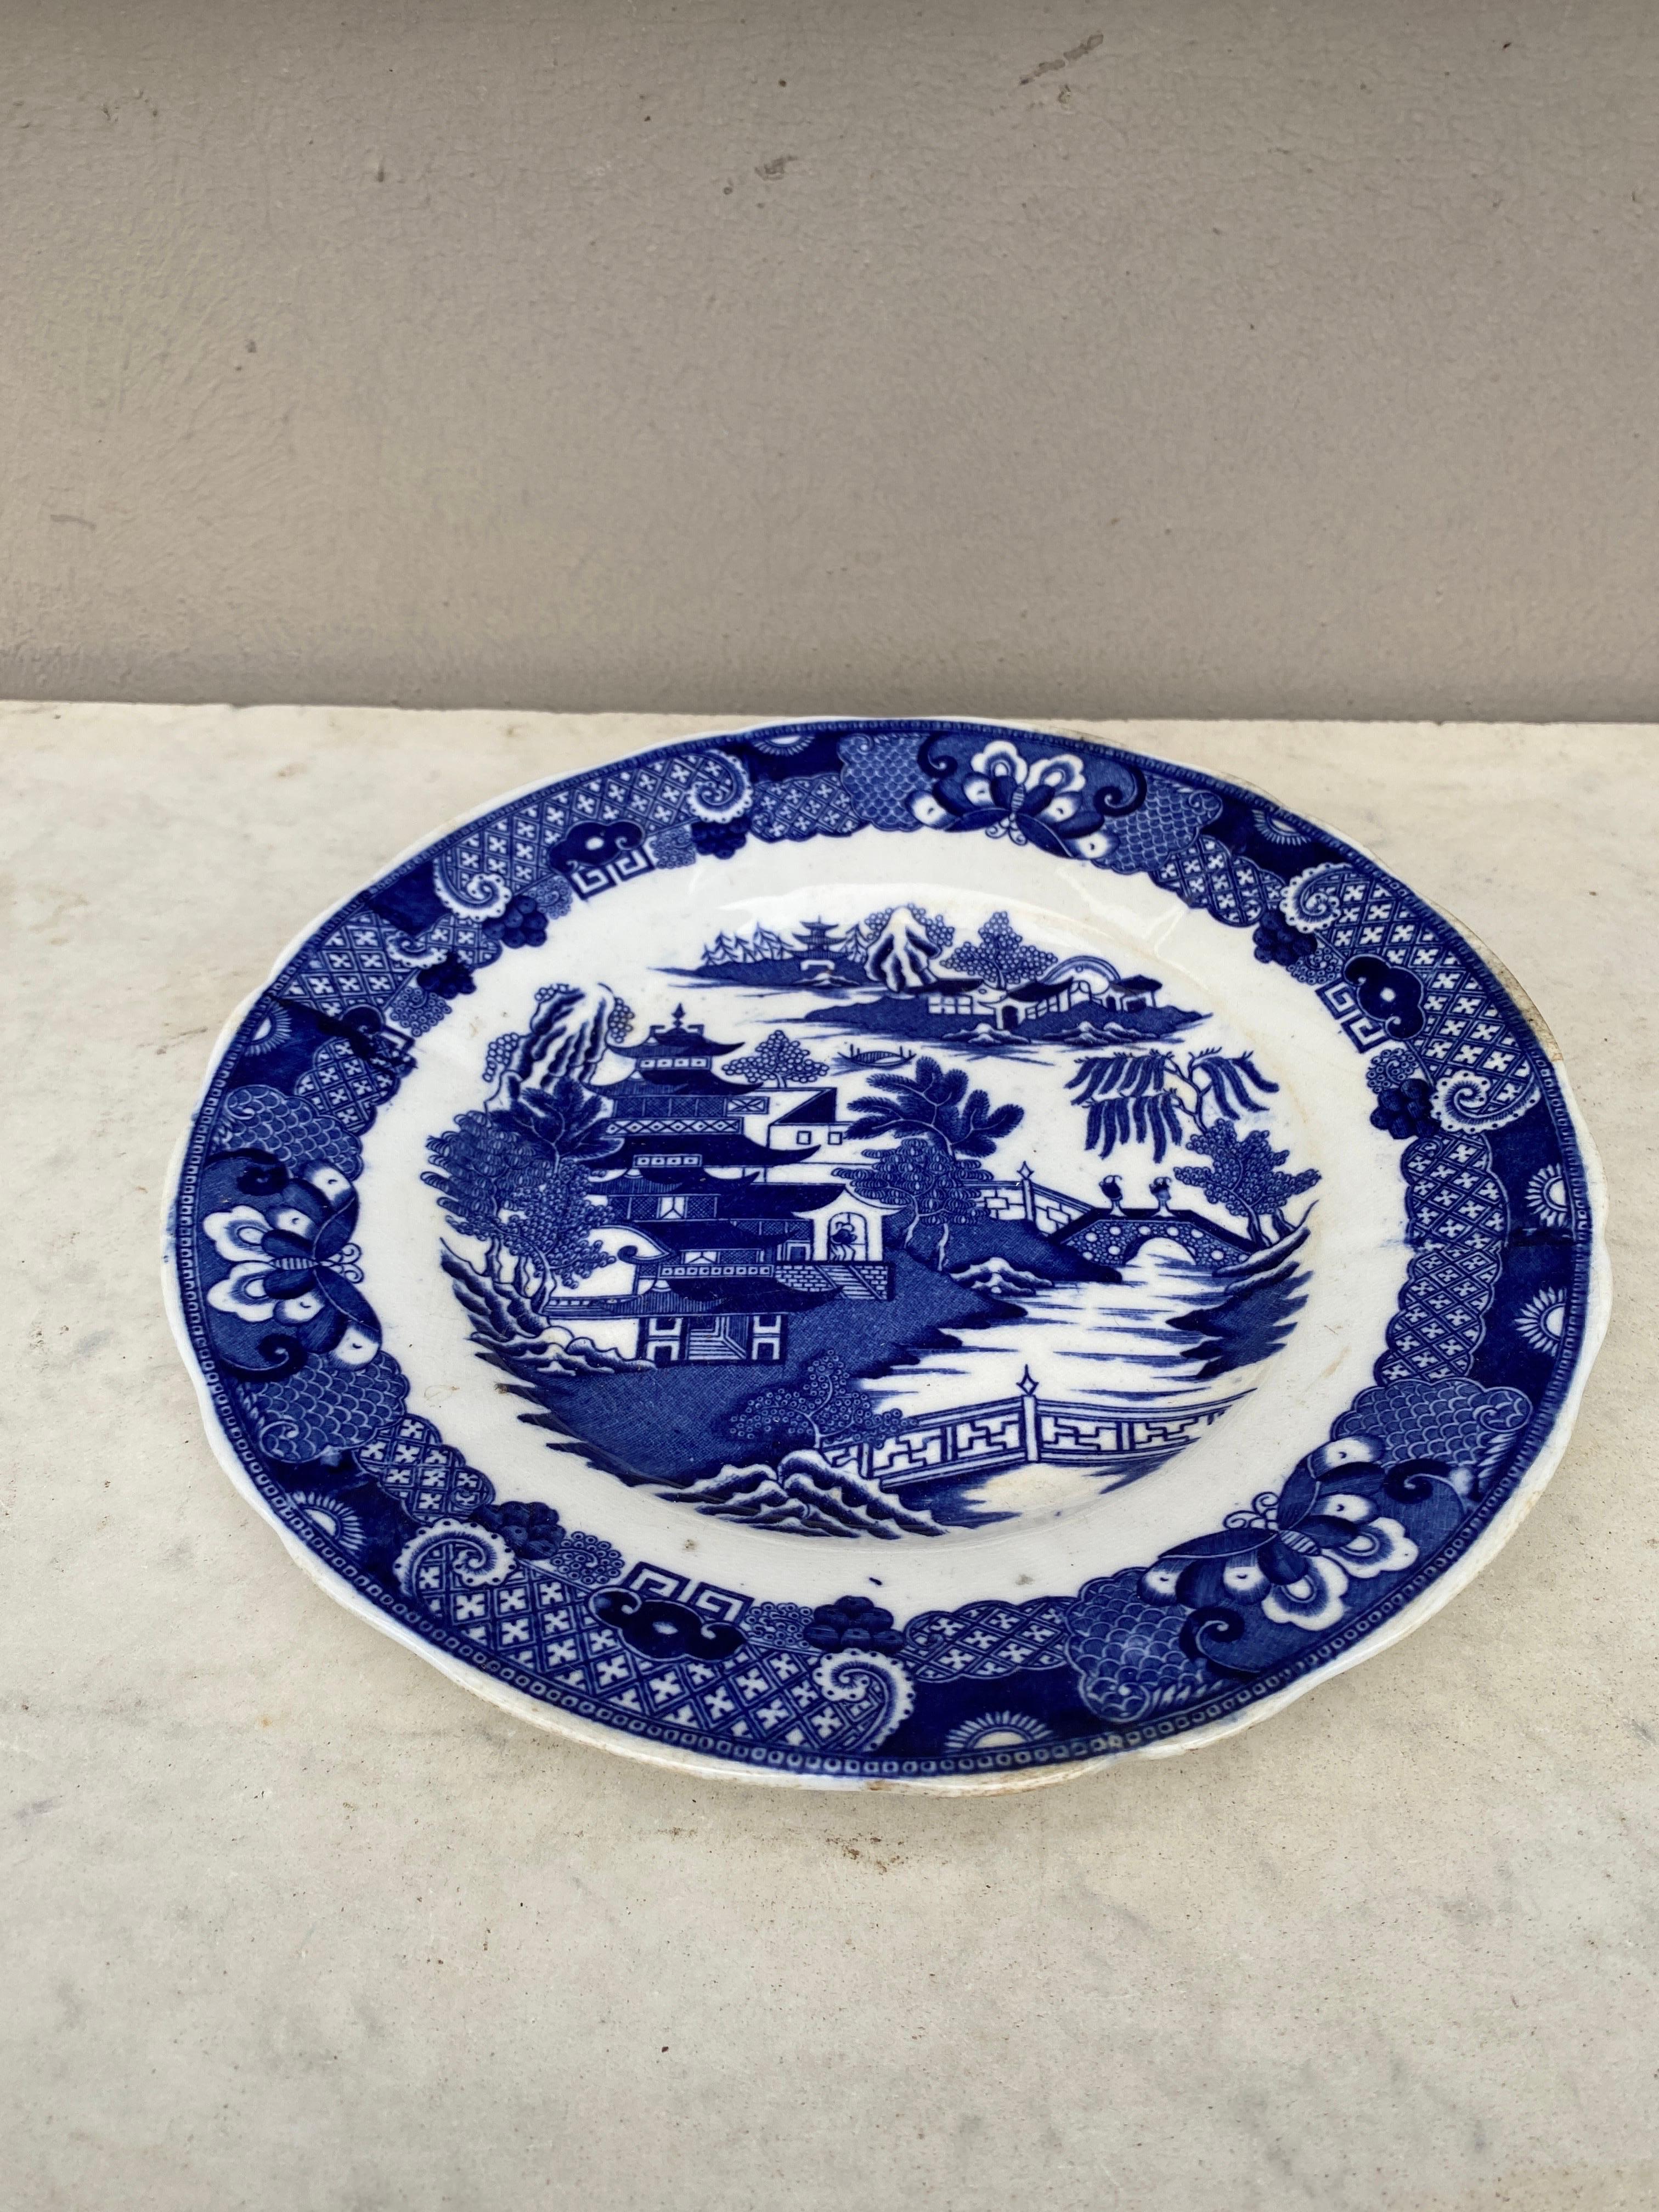 Assiette bleue et blanche de style Chinoiserie anglaise du 19e siècle.
9,5 pouces de diamètre.